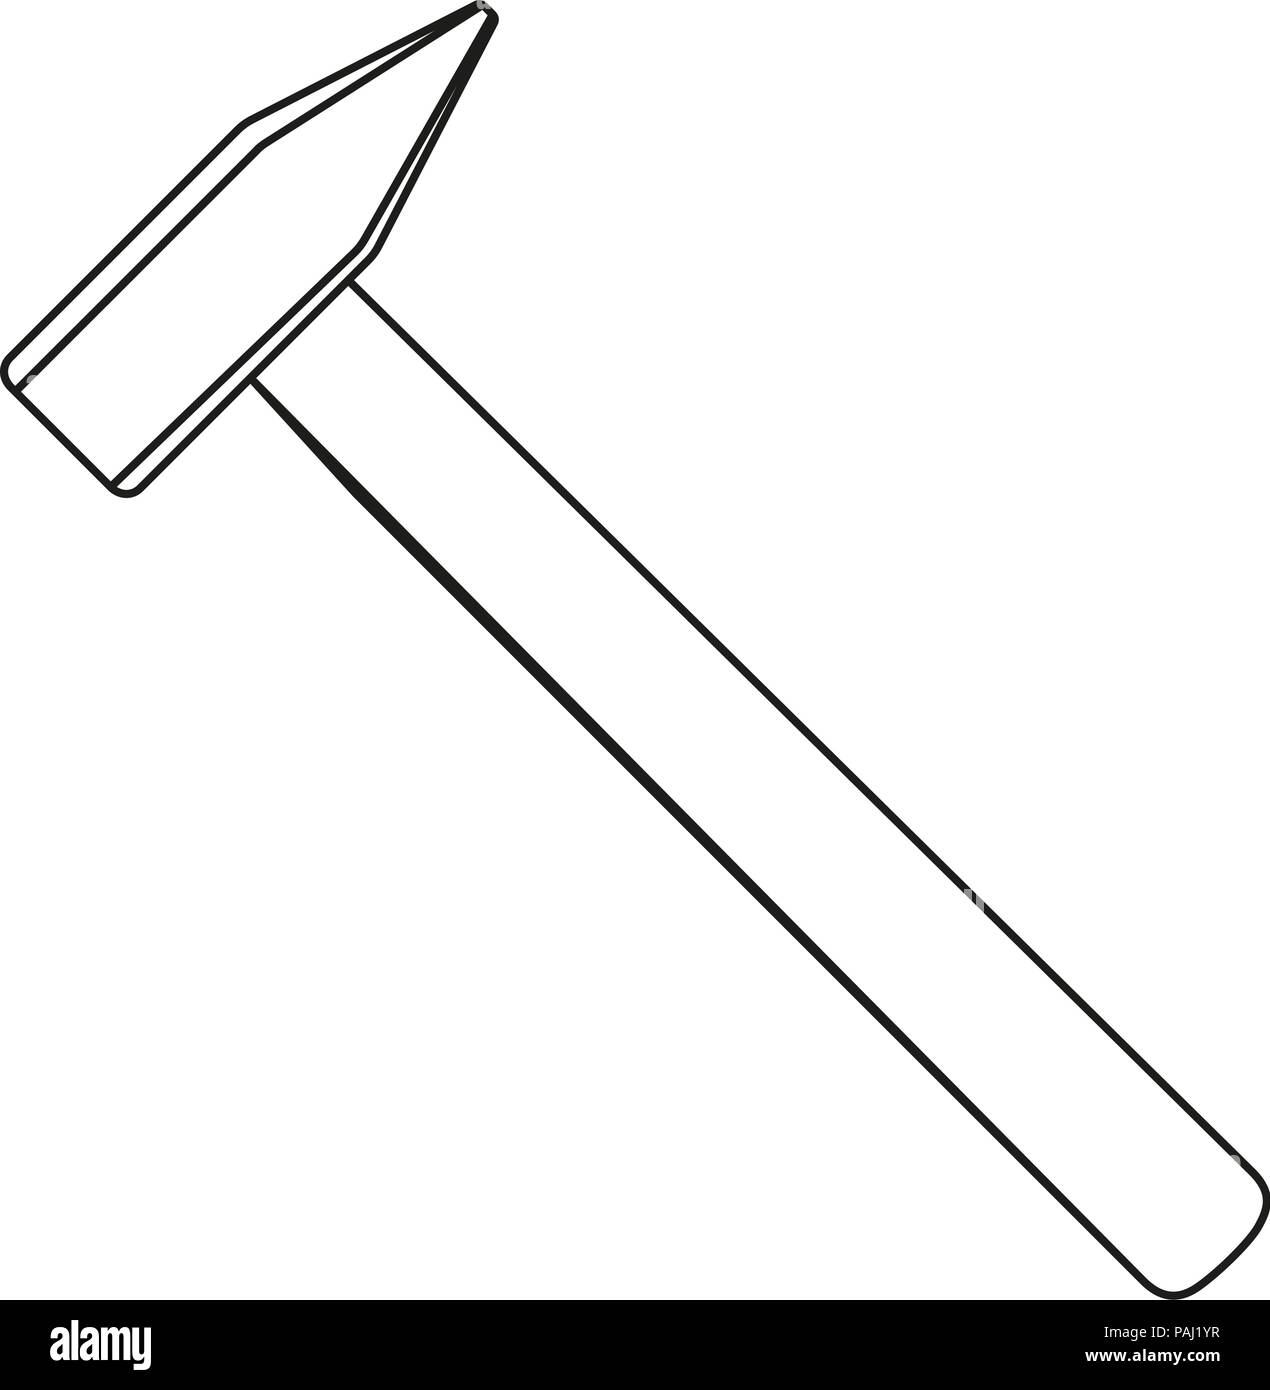 Les dessins au trait noir et blanc simple marteau Illustration de Vecteur